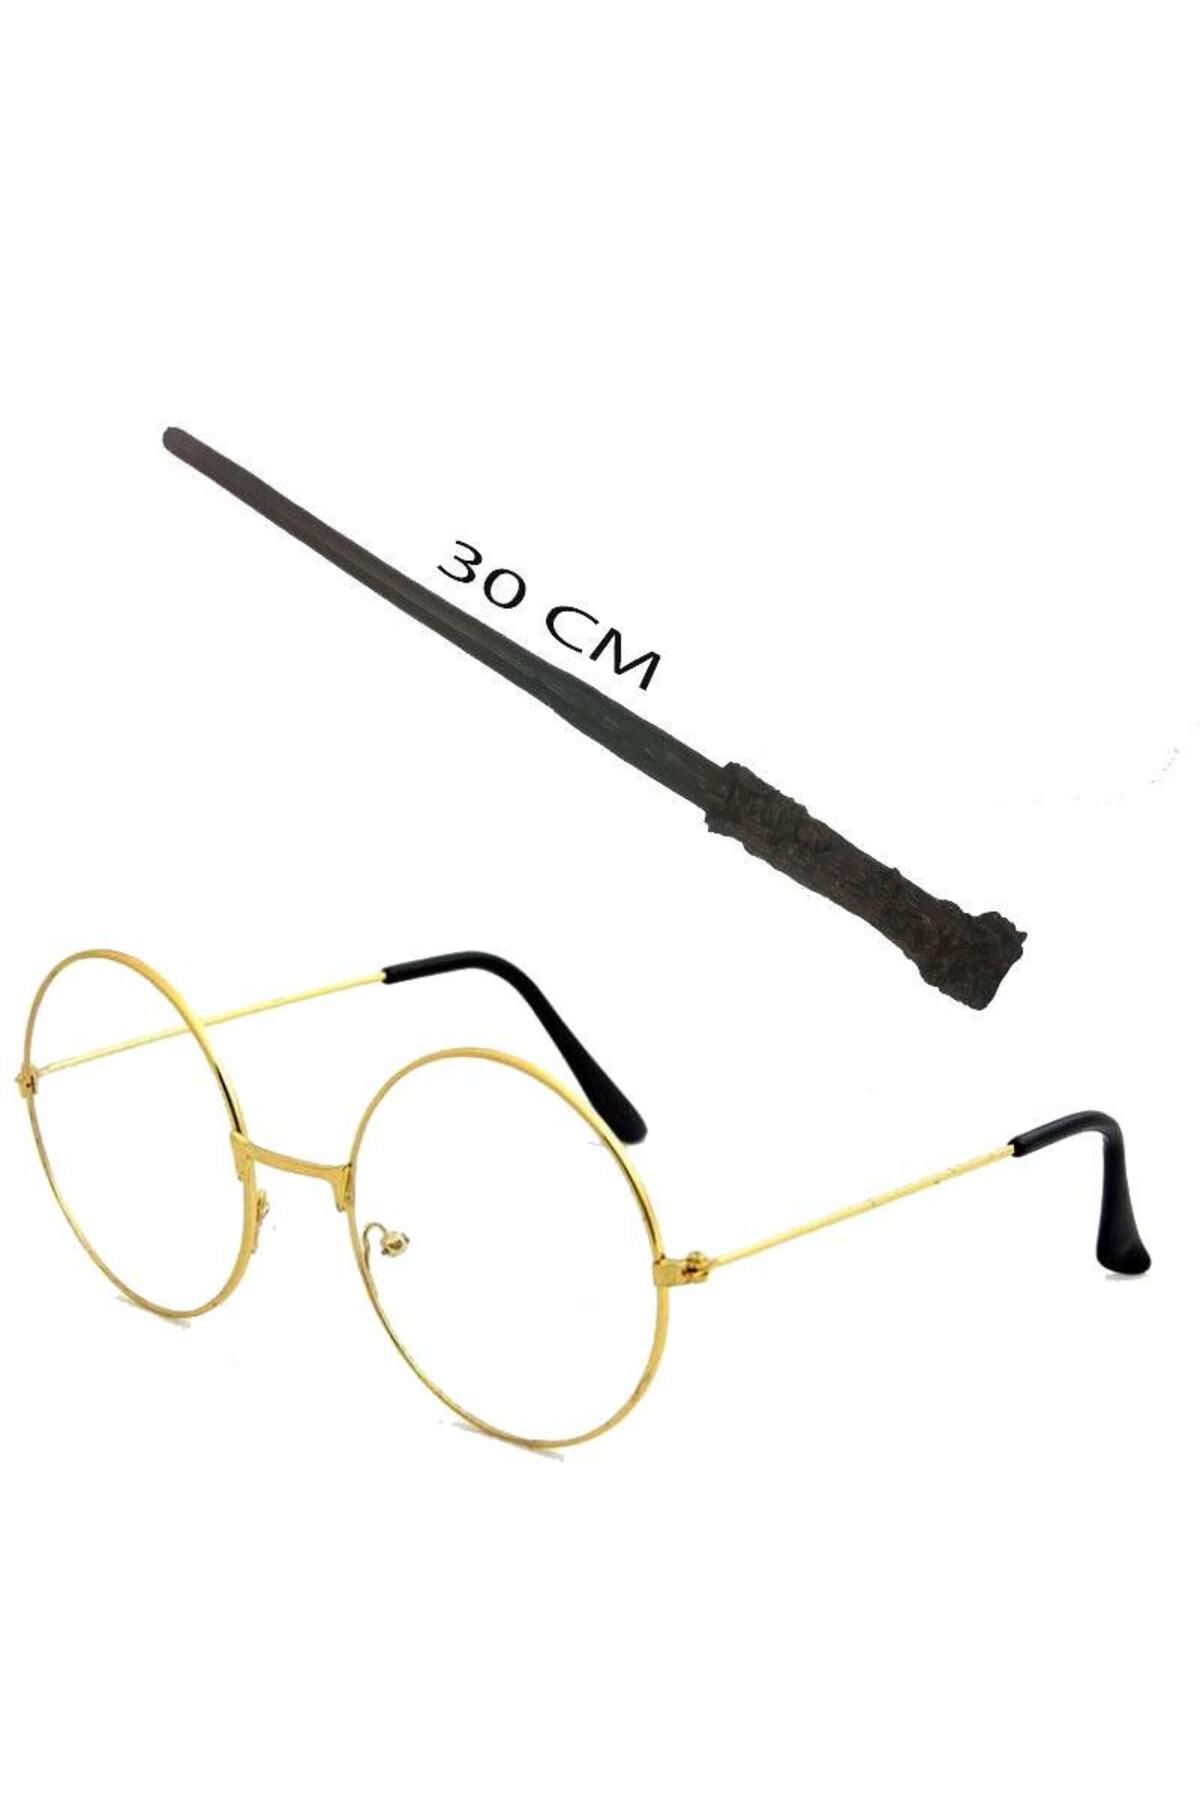 Skygo Harry Potter Asası 30 cm ve Harry Potter Gözlüğü Seti